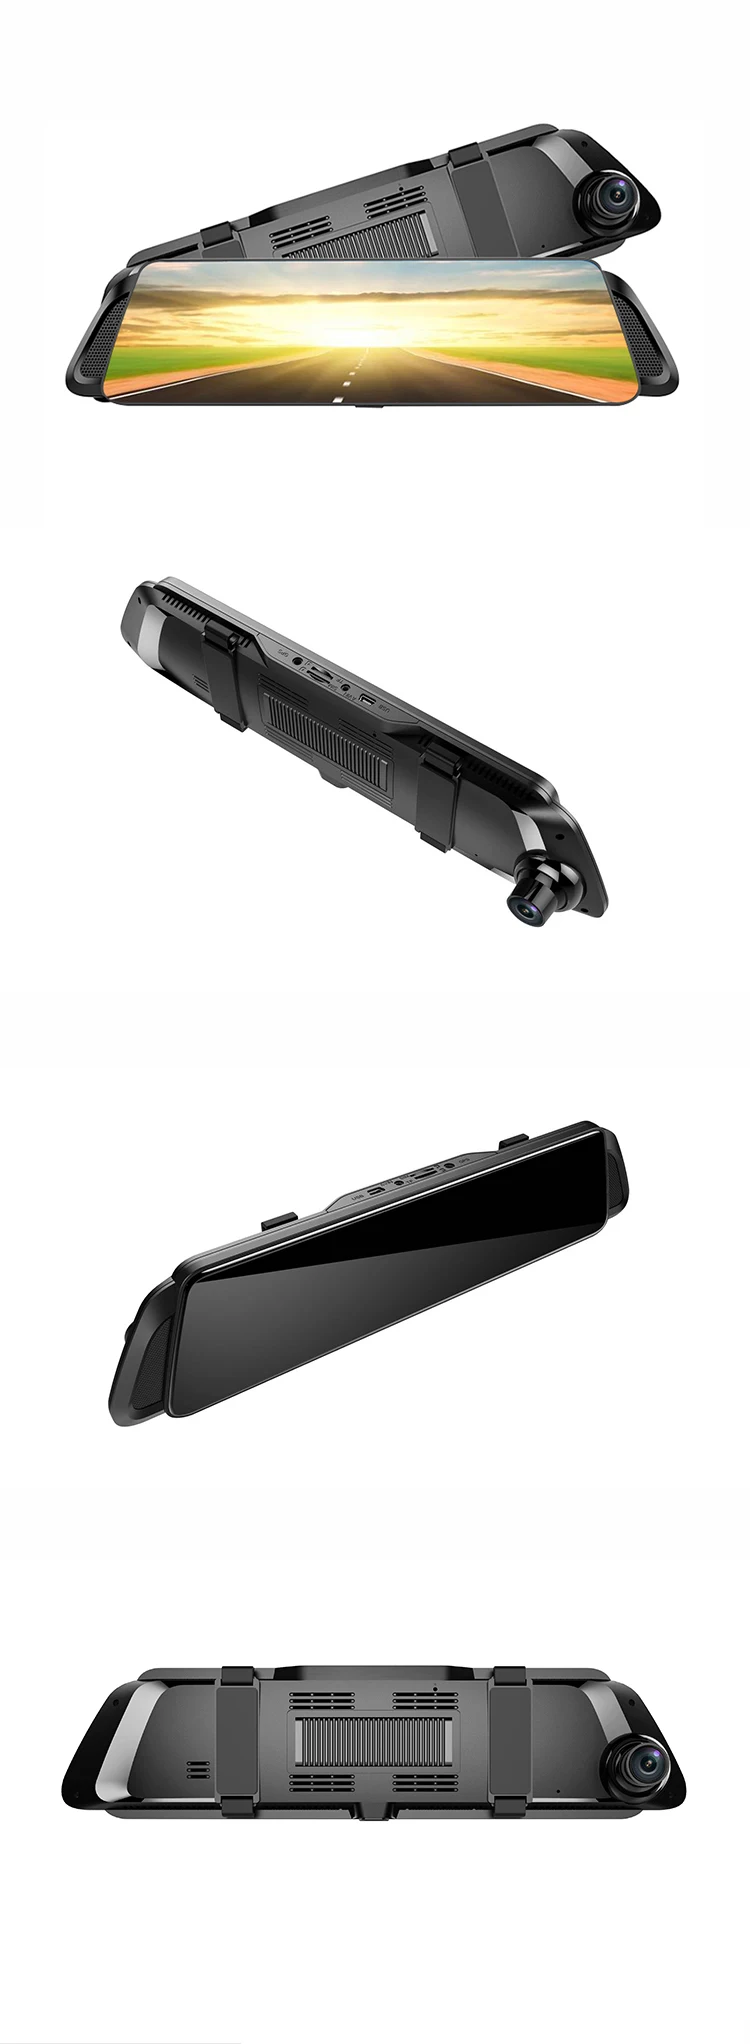 2020 Novo Produto ADAS 4G Car DVR 10 "Espelho Retrovisor Câmera Full HD 1080P Android GPS Dirigindo Video Recorder Dash Cam